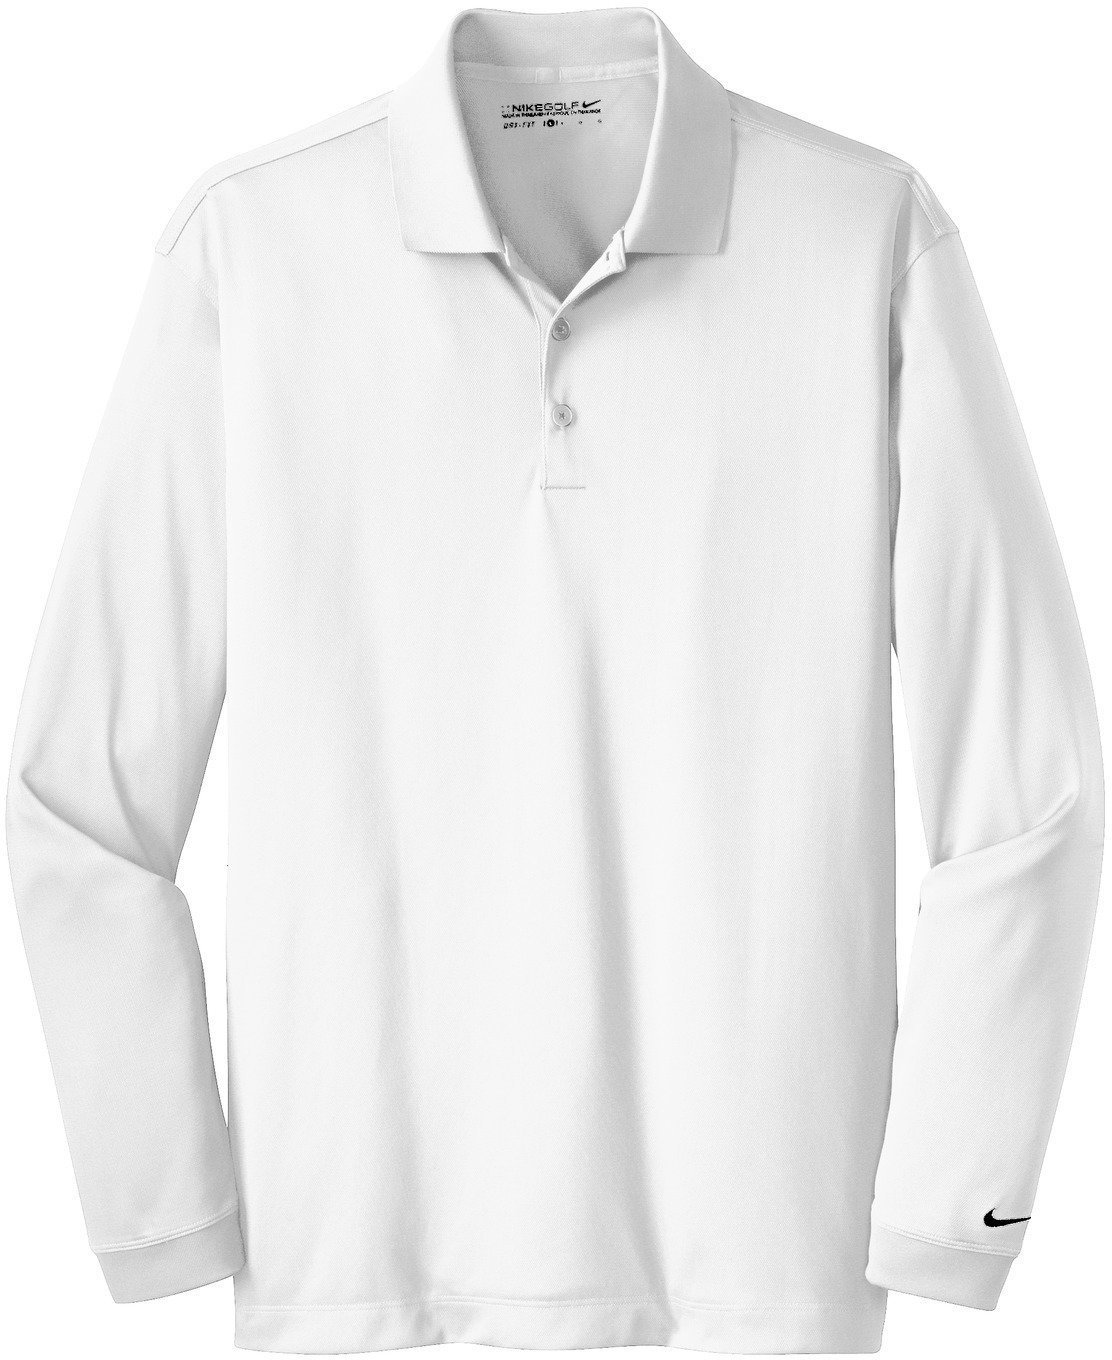 Πουκάμισα Πόλο Nike Dry Long Sleeve Core Womens Polo Shirt White/Black M